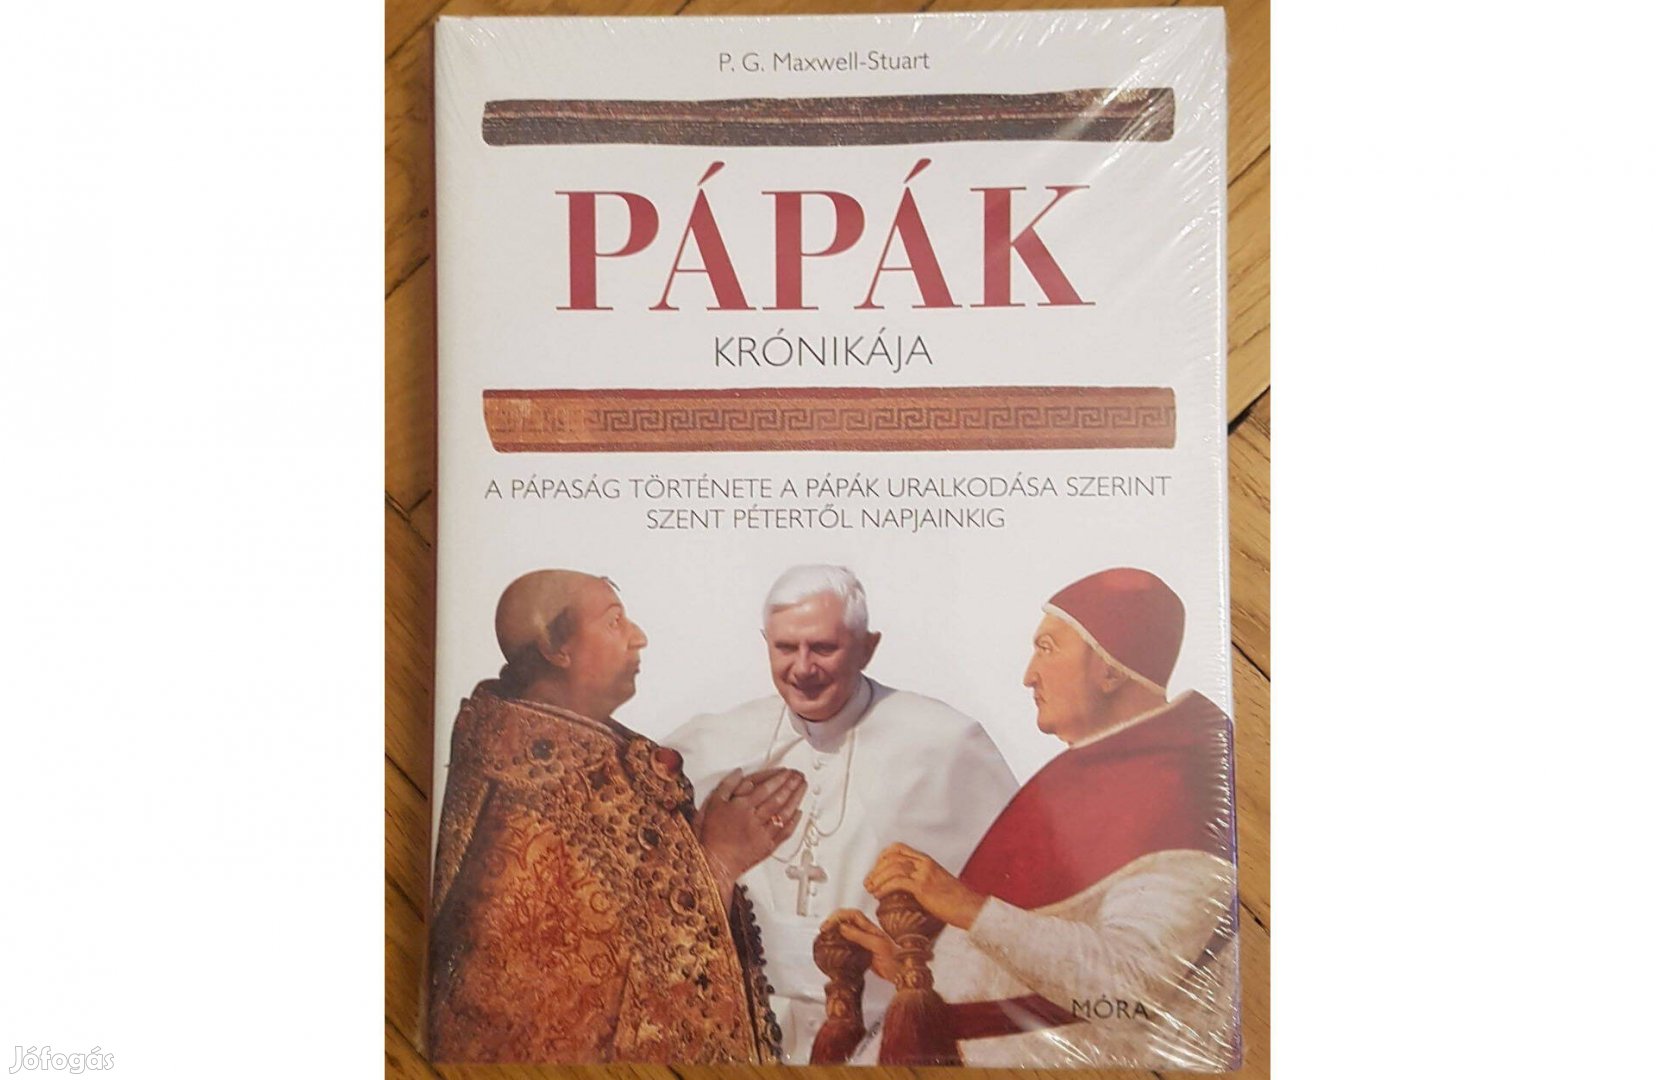 Pápák krónikája könyv - A pápaság története uralkodása 978963118